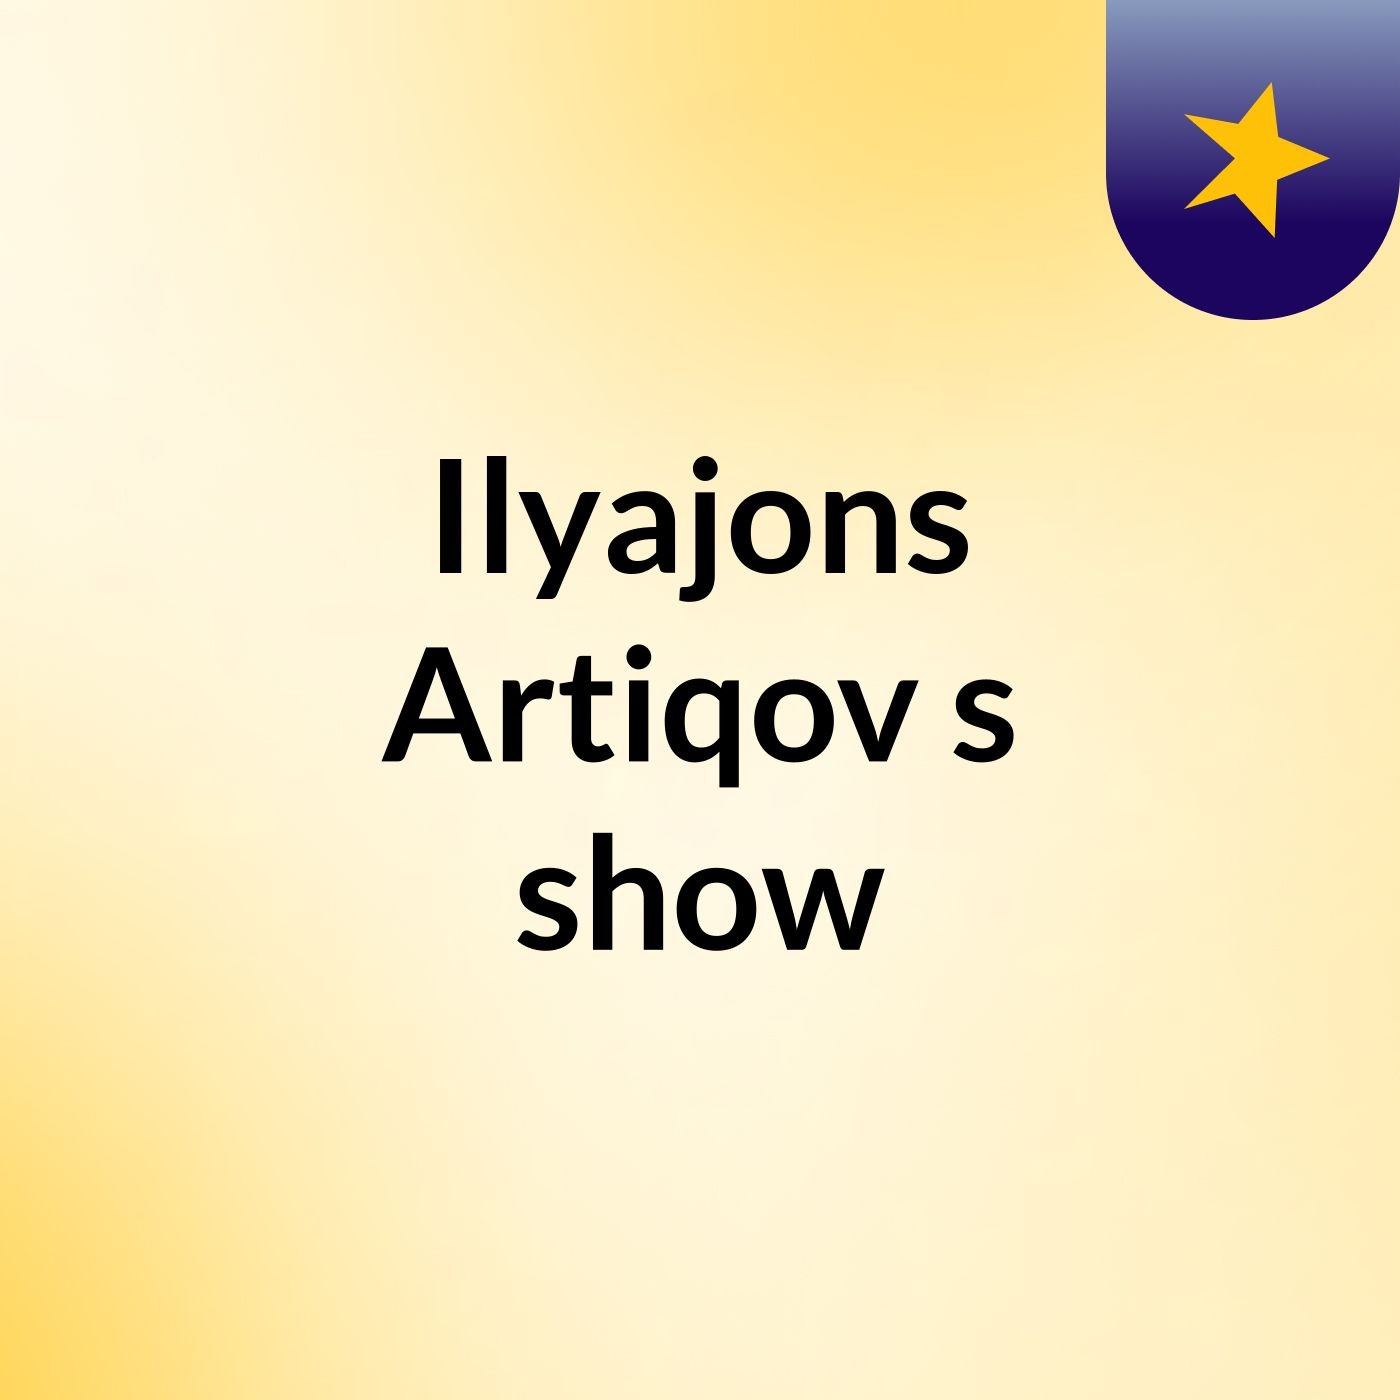 Ilyajons Artiqov's show